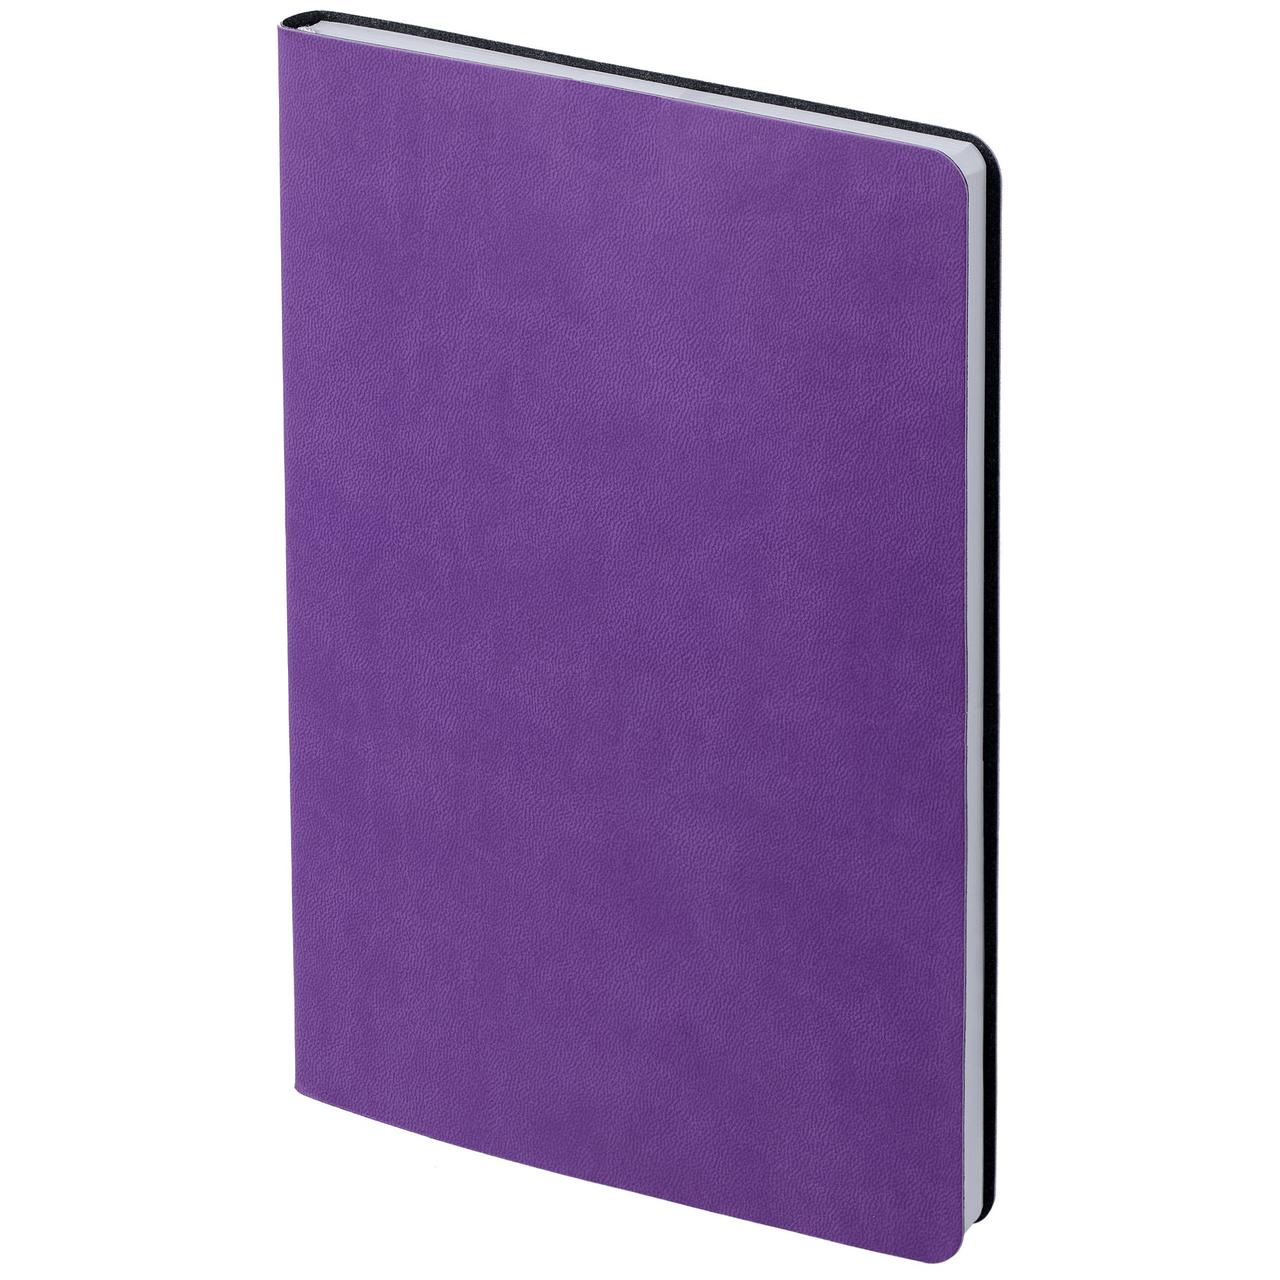 Ежедневник Flex New Brand, недатированный, фиолетовый (артикул 17883.70)